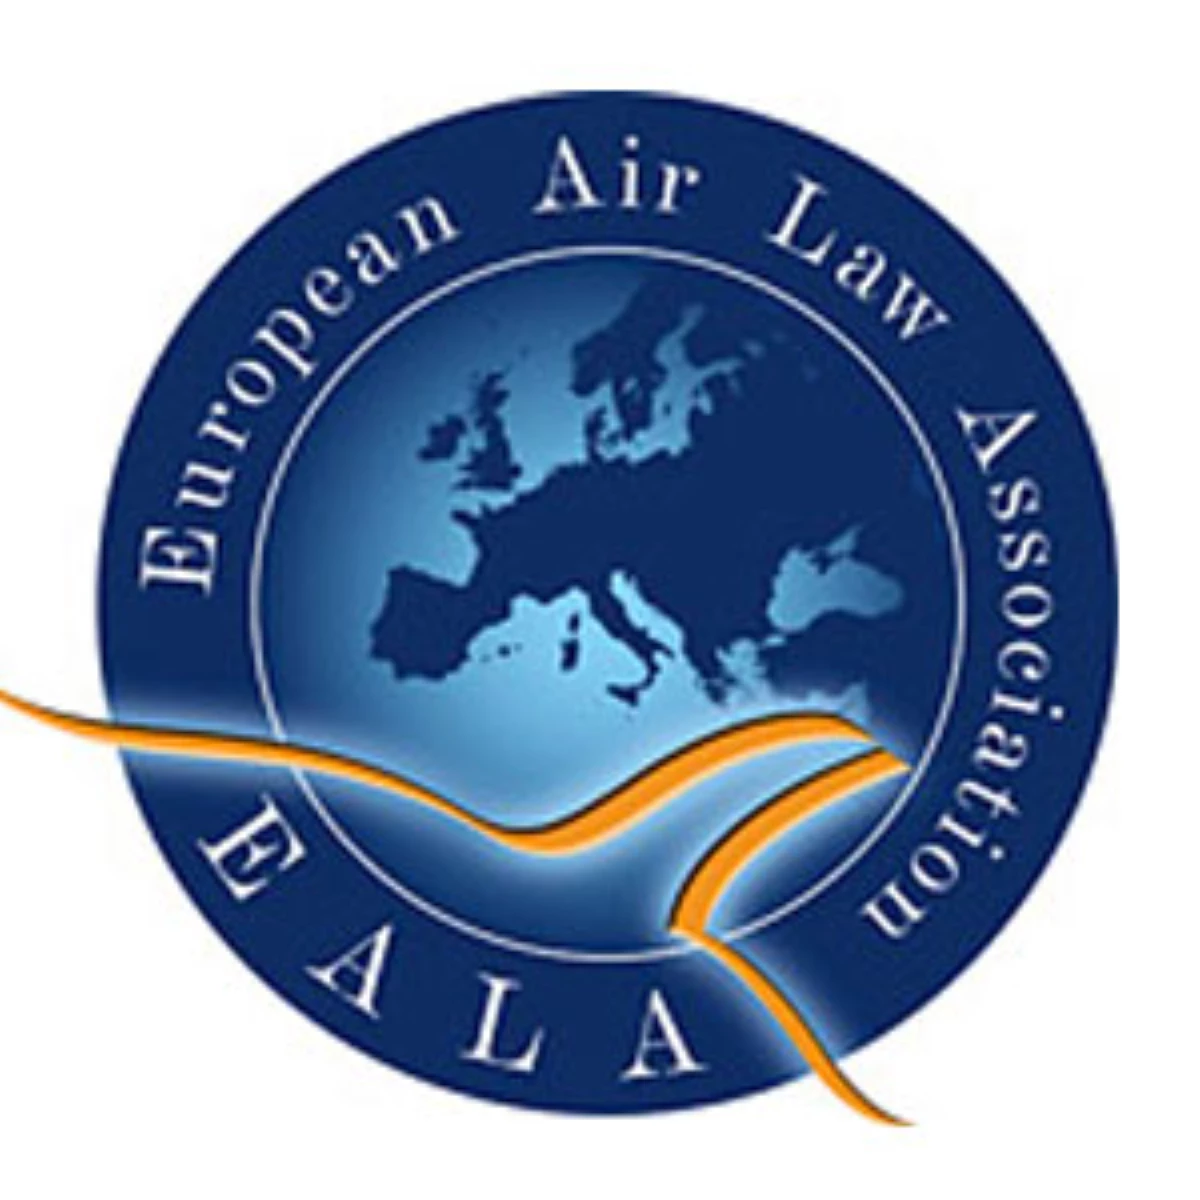 Avrupa Hava Hukuku Derneği Yıllık Konferansı